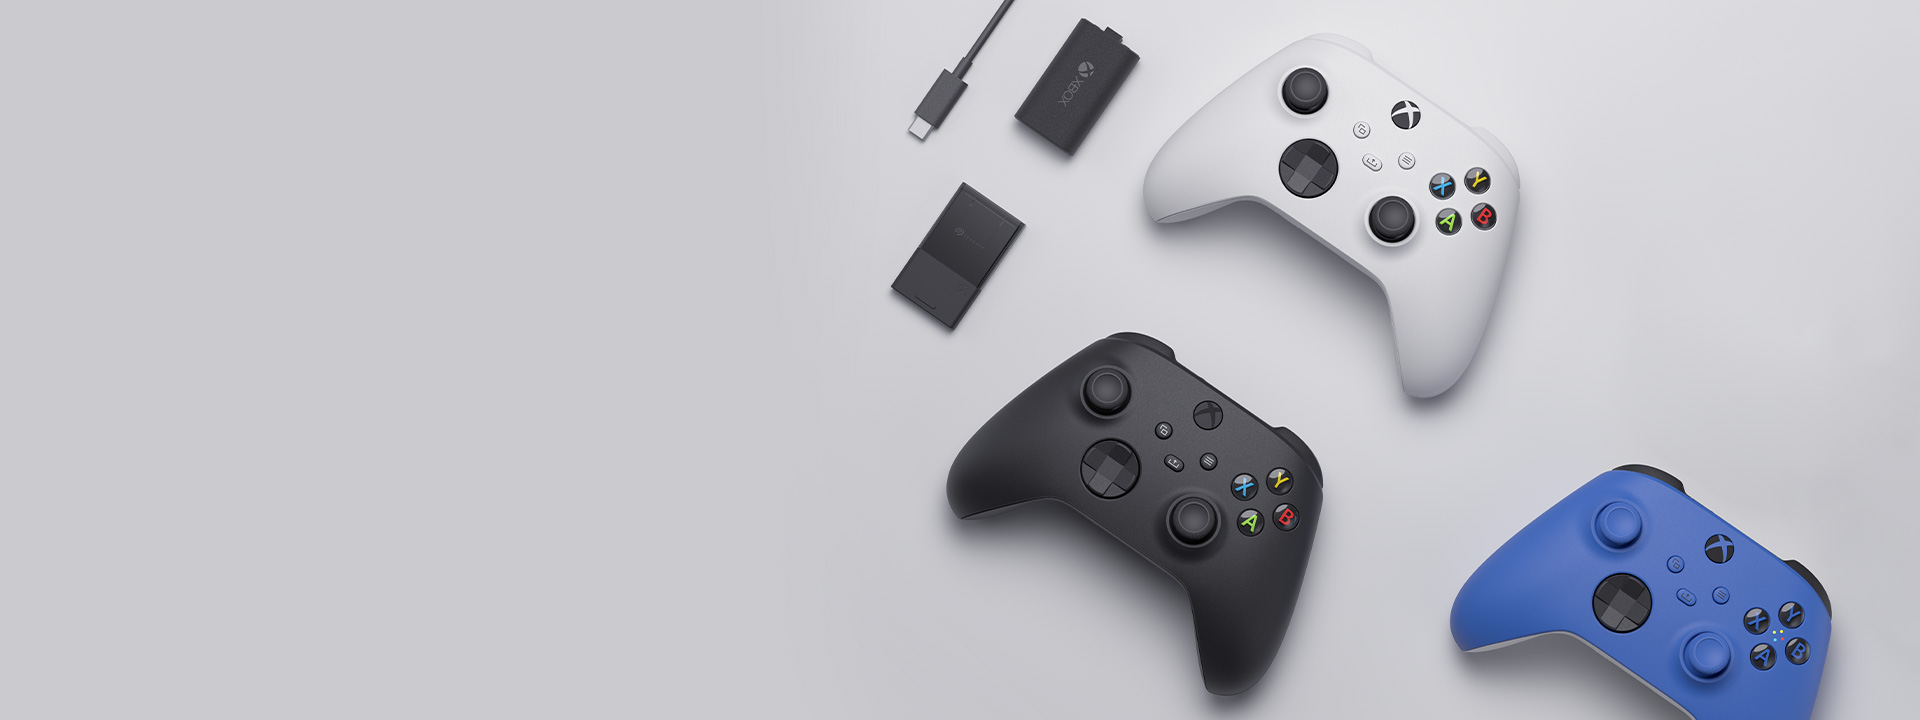 Divers accessoires Xbox sont disposés les uns à côté des autres, dont la manette sans fil Xbox, le kit de chargement et la carte d’extension de stockage Seagate pour Xbox Series X|S.